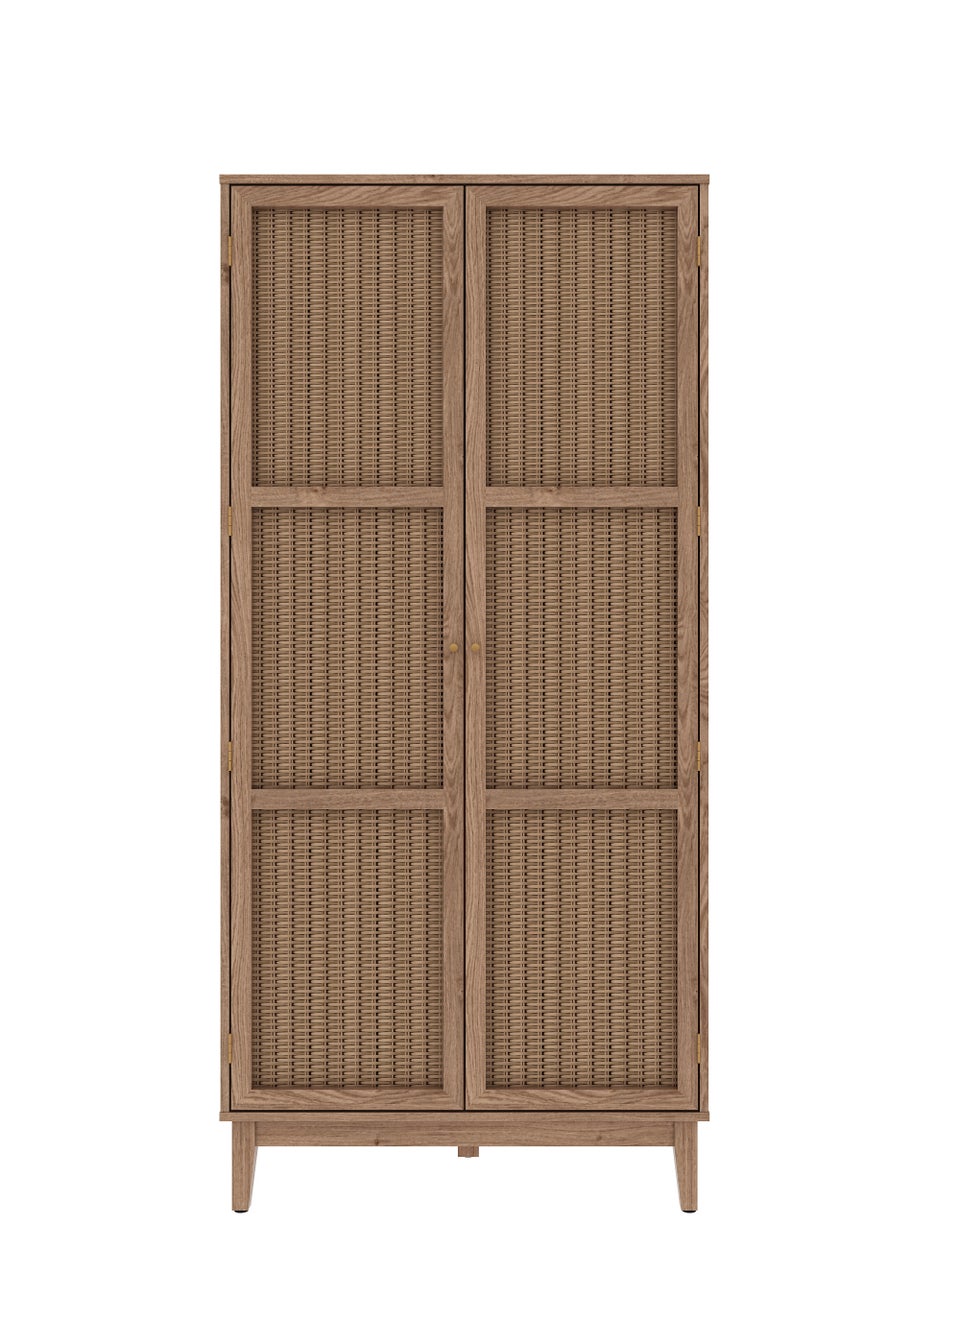 LPD Furniture Bordeaux 2 Door Wardrobe (1810x557x850mm)